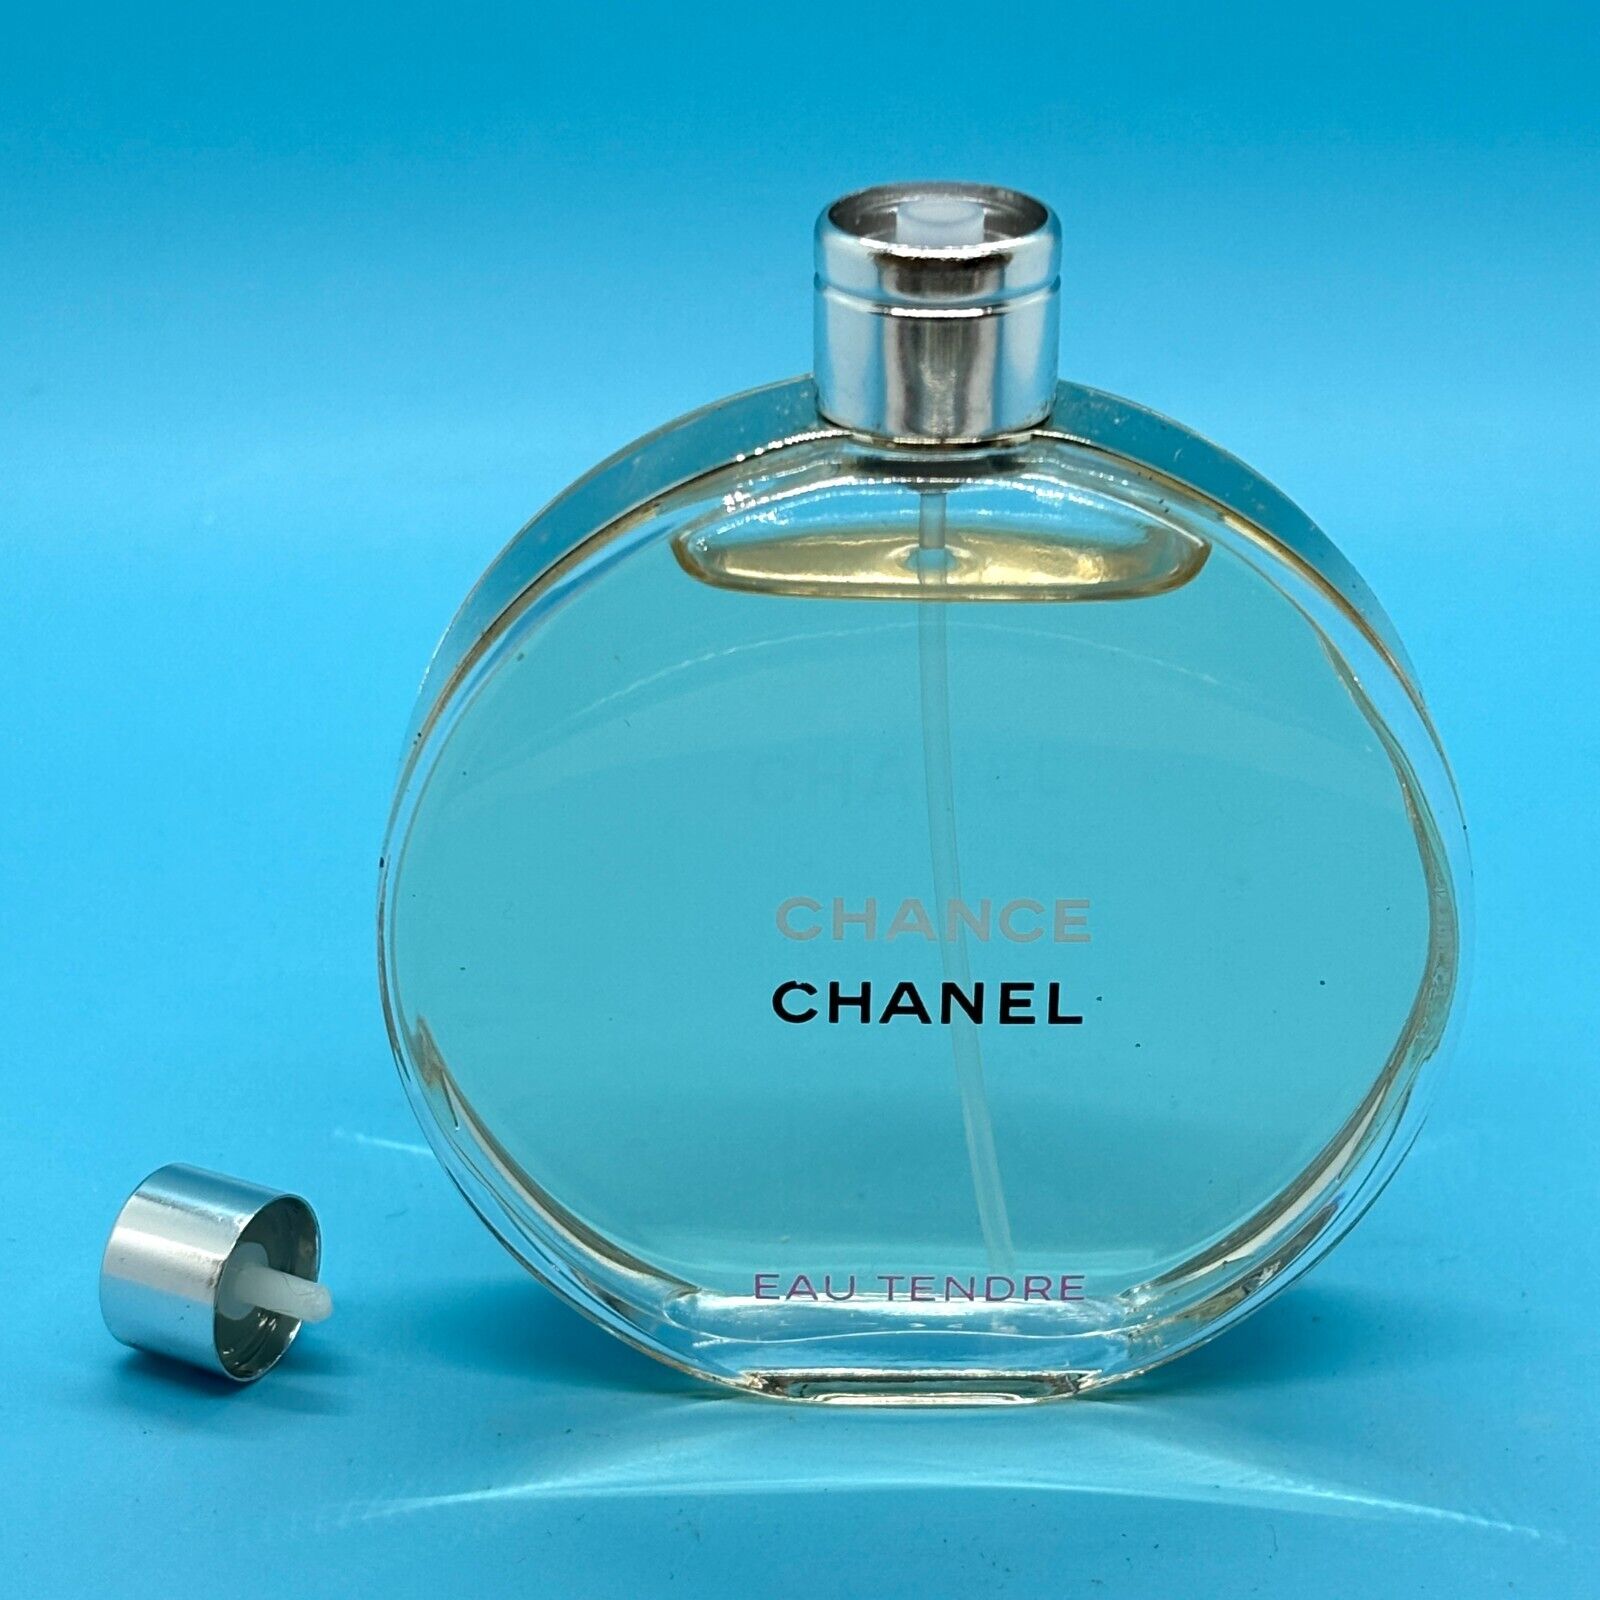 Chanel Chance Eau Tendre EDT 1.7 oz/50 ml – READ DESCRIPTION